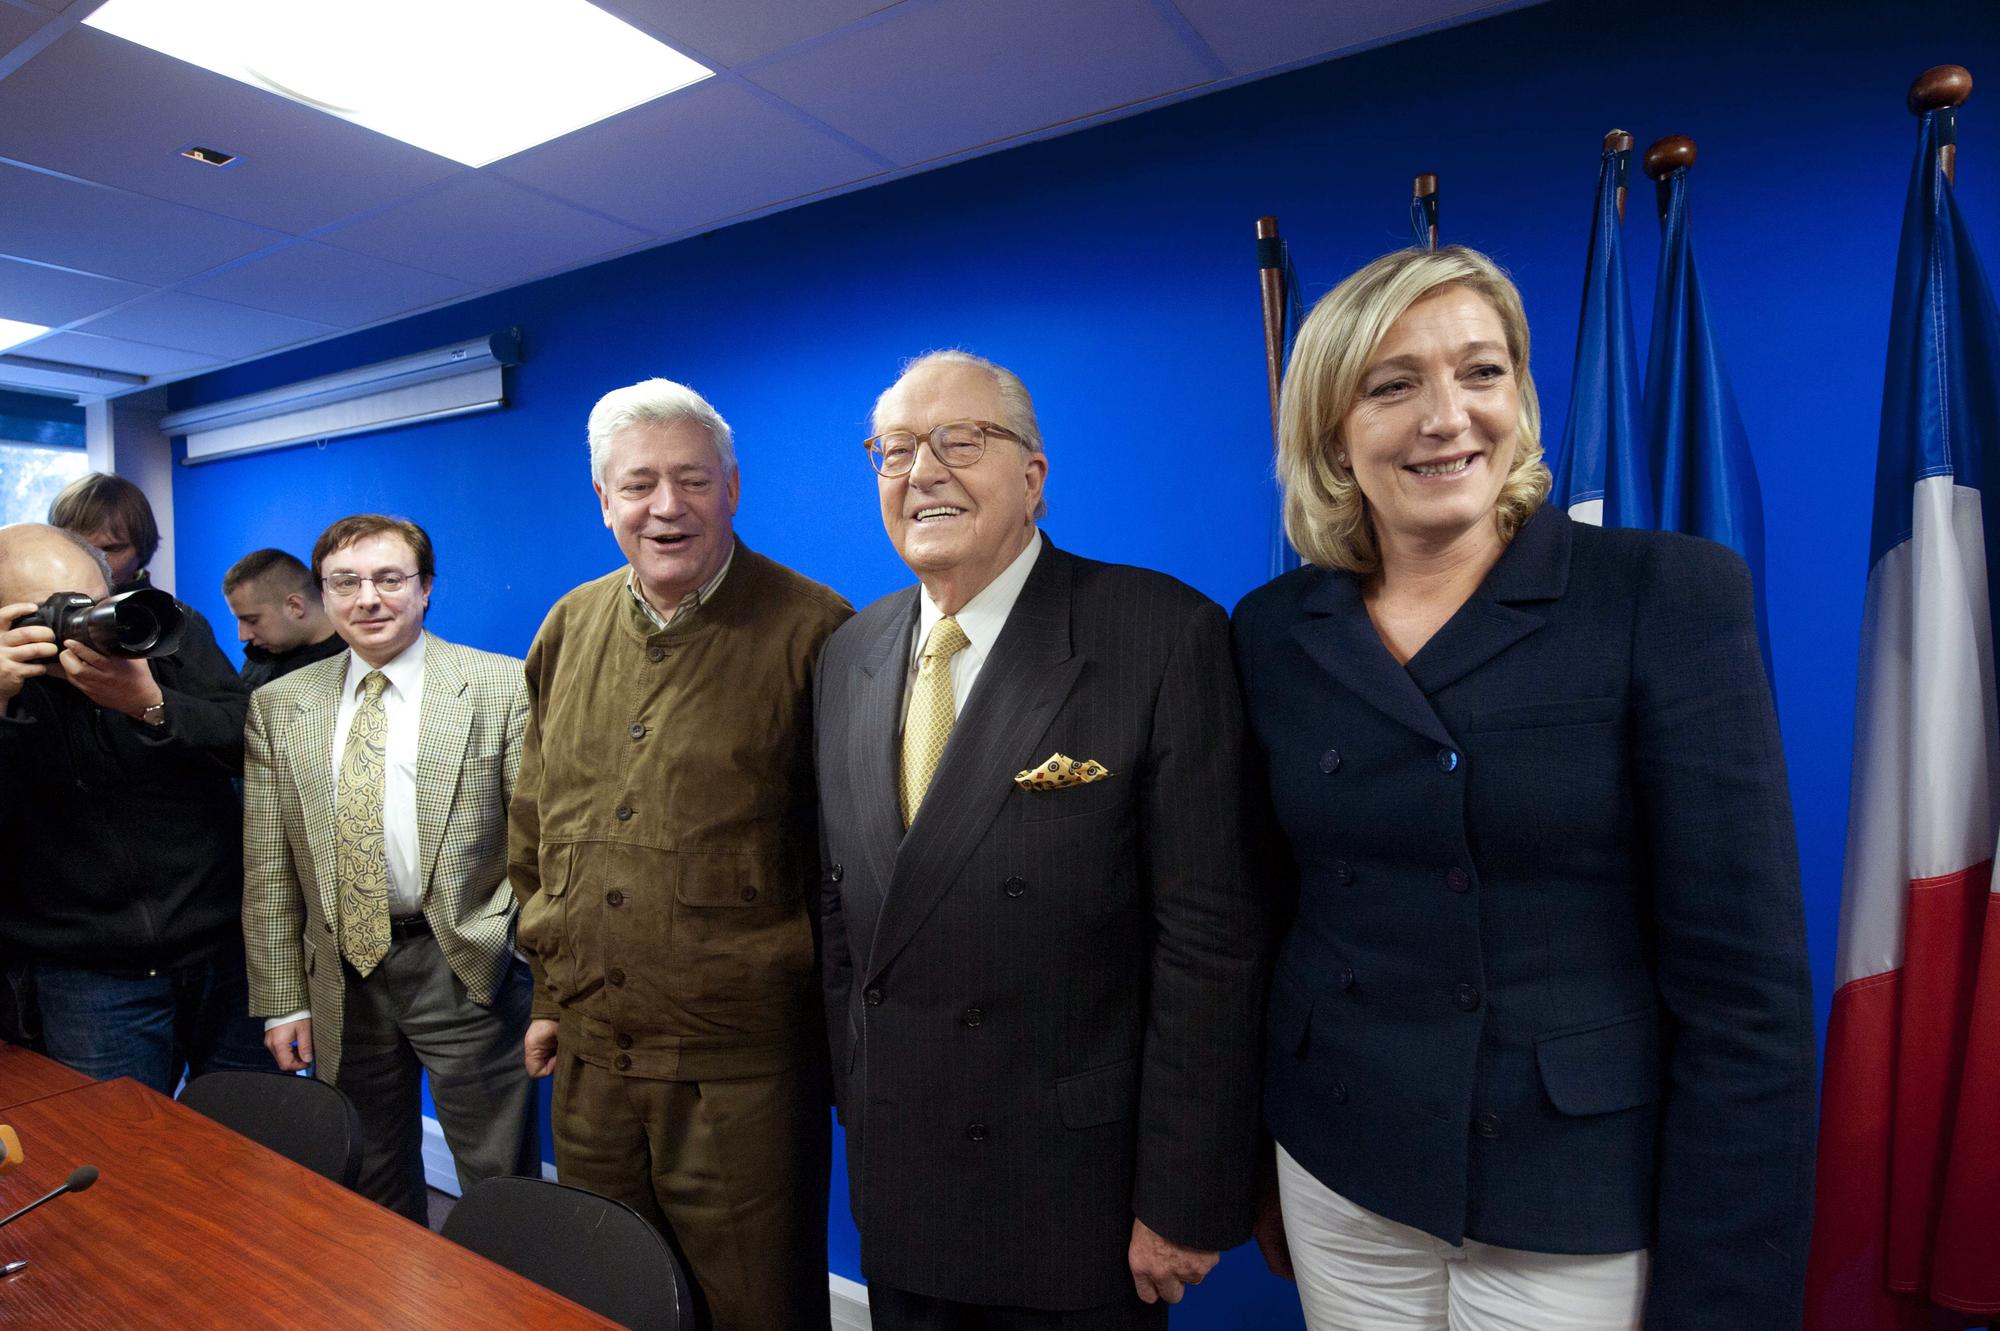 La fille de Jean-Marie Le Pen était depuis quelques temps présentie pour prendre le relais de son père. [Bertrand Langlois - BERTRAND LANGLOIS]